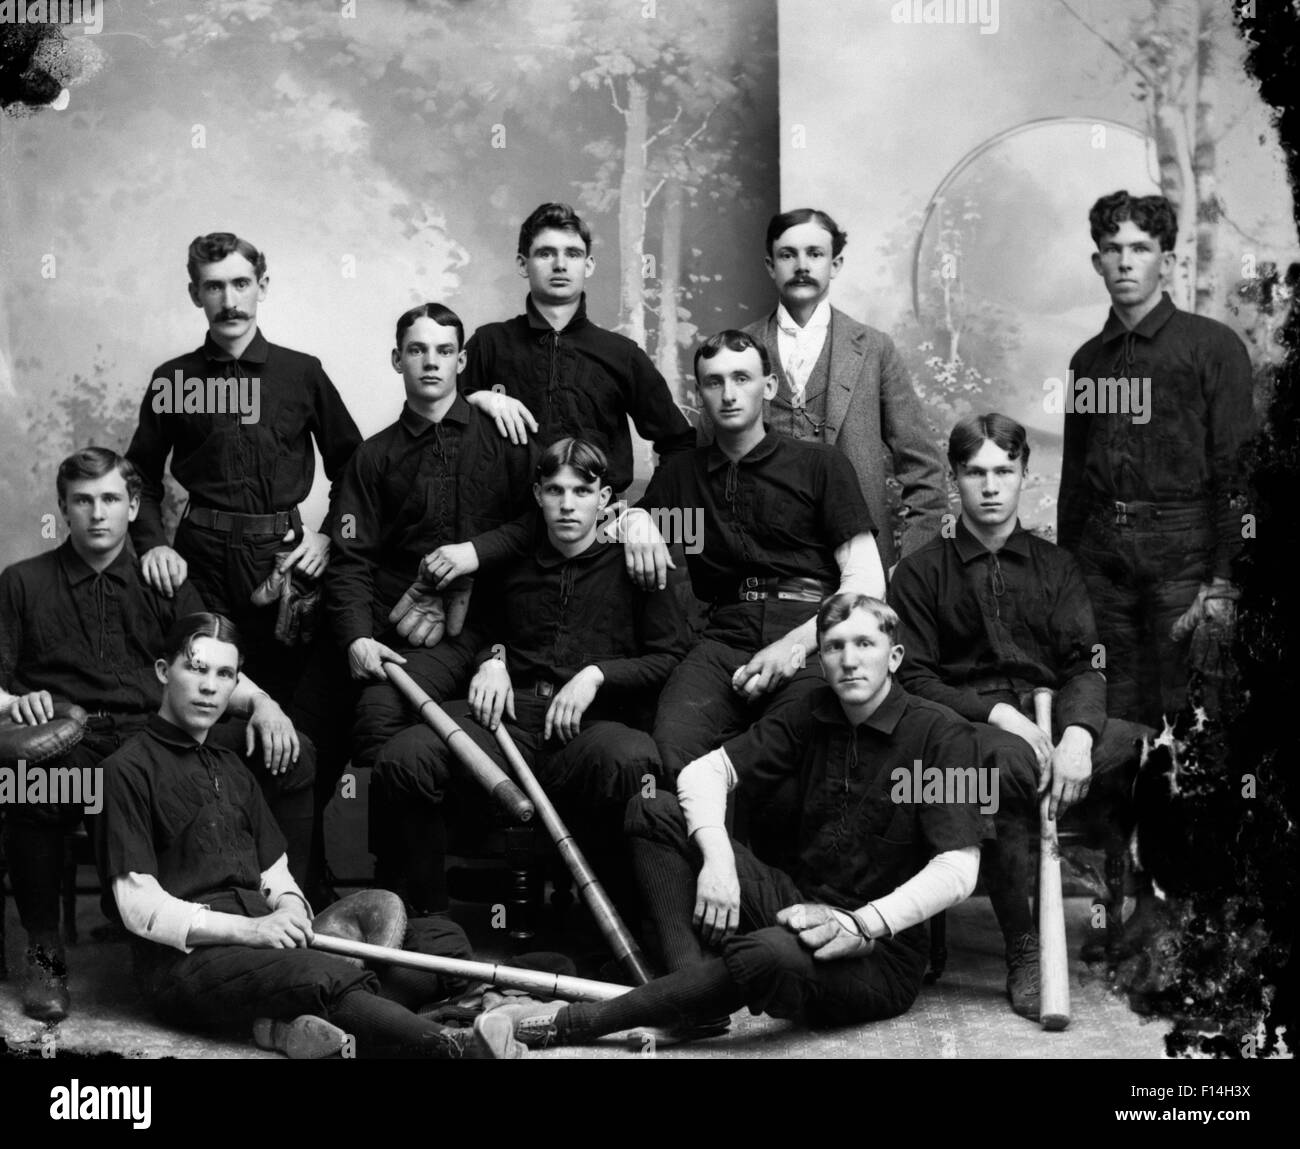 1890 DÉBUT DU 20ème siècle Portrait de l'équipe de baseball joueurs  détiennent les CHAUVES-SOURIS & MOUFLES LOOKING AT CAMERA Photo Stock -  Alamy